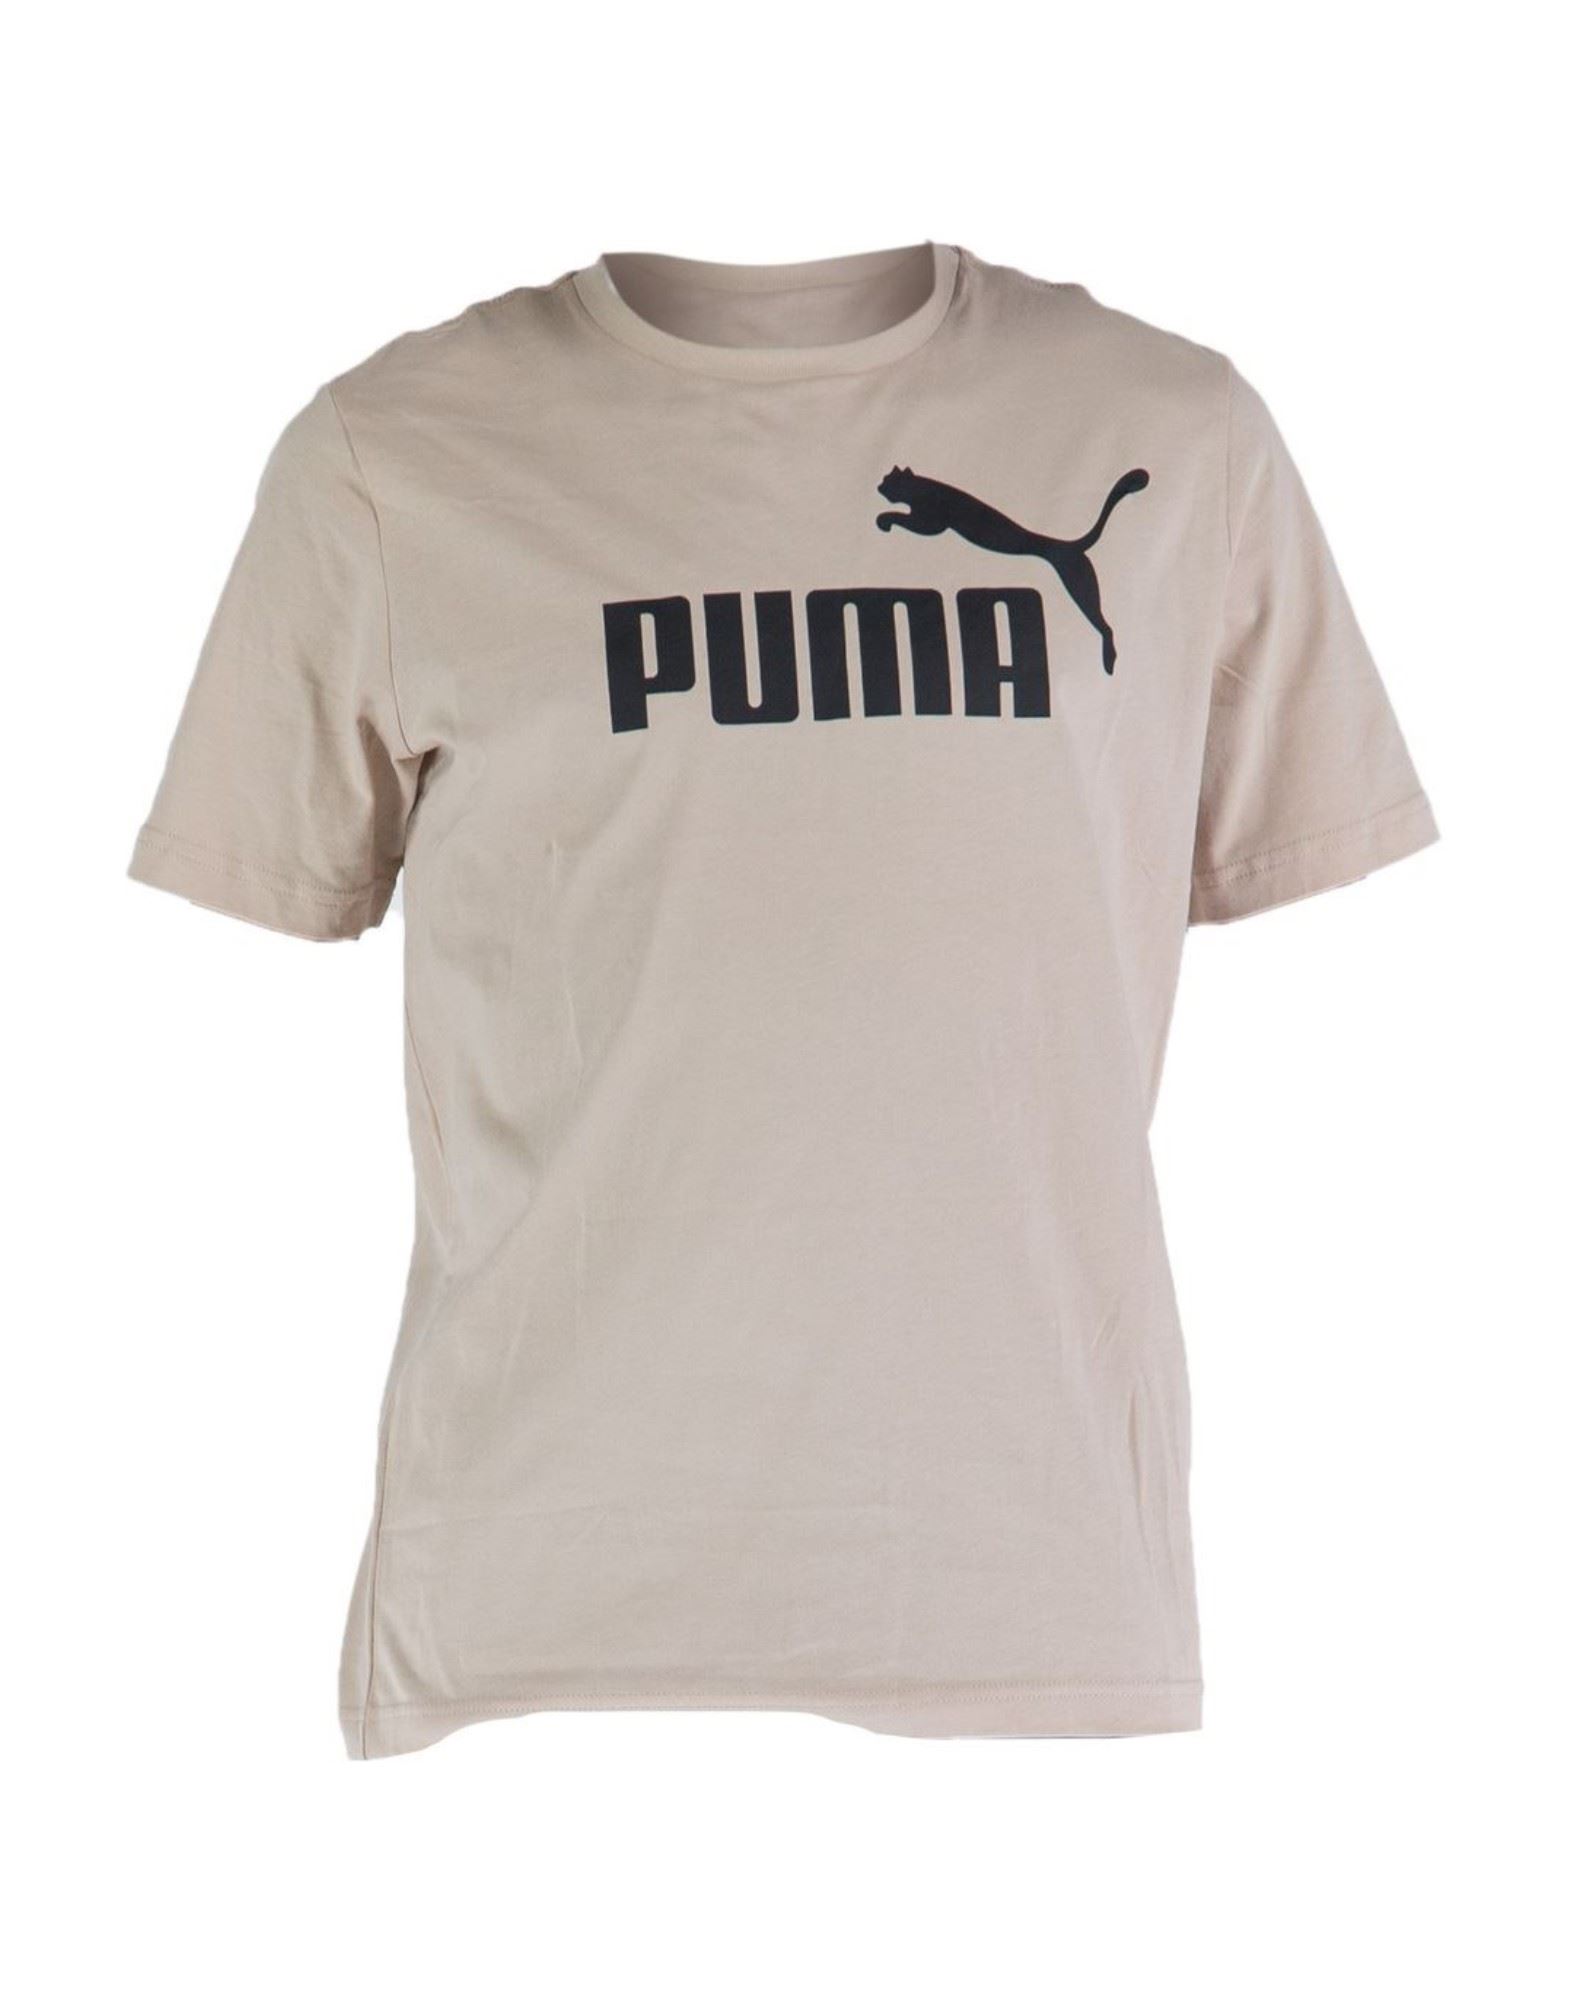 PUMA T-shirts Herren Beige von PUMA